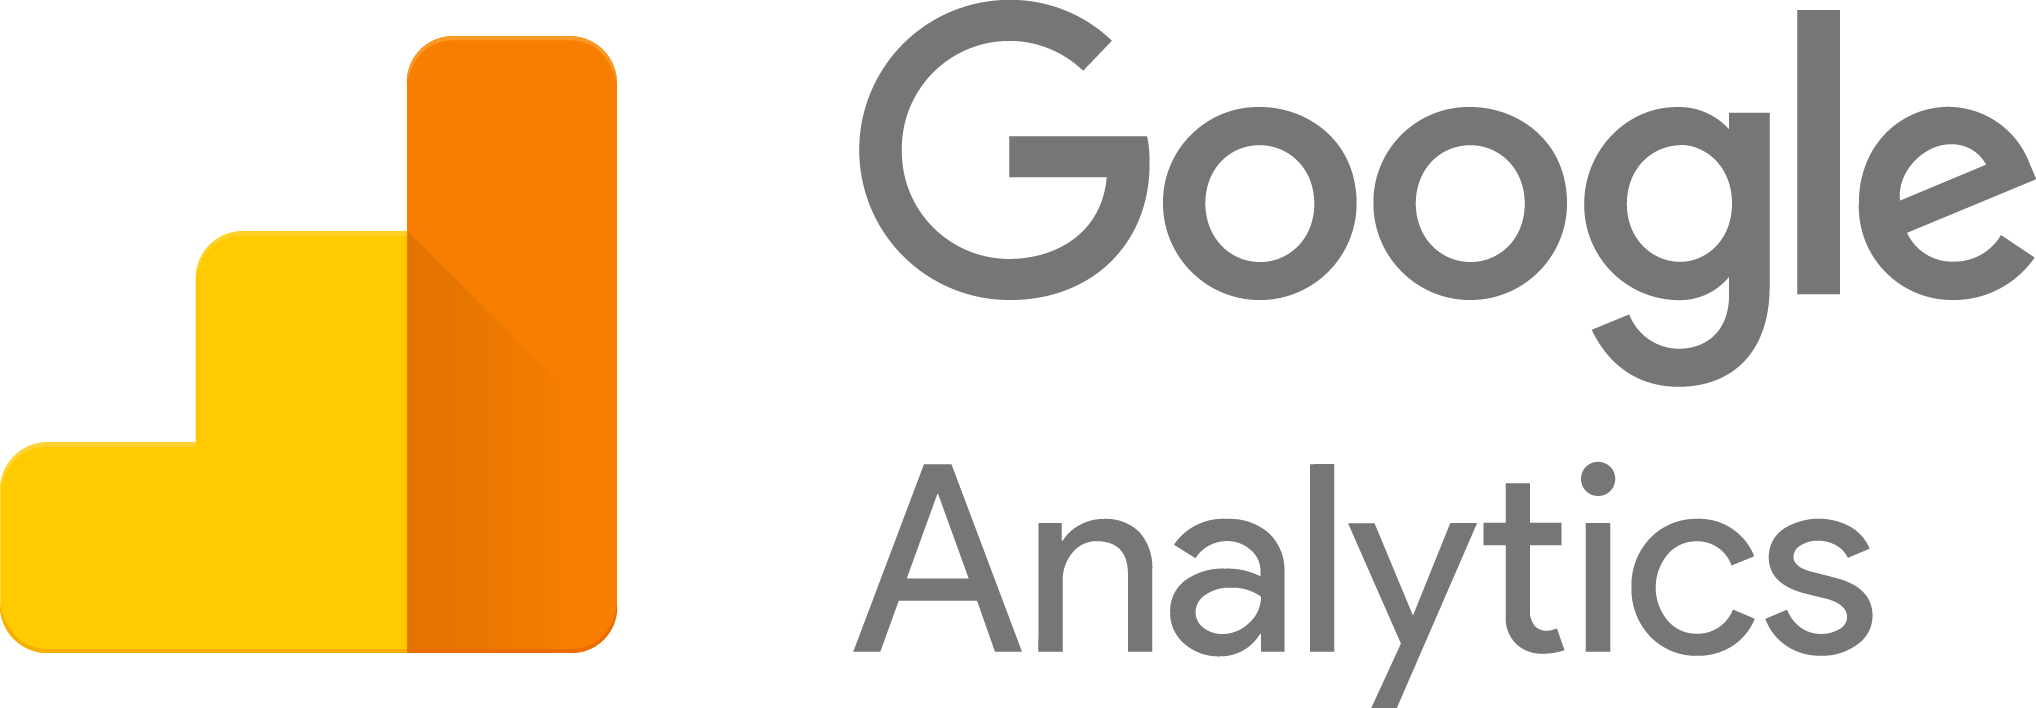 Google Analytics Logo PNG - 180225